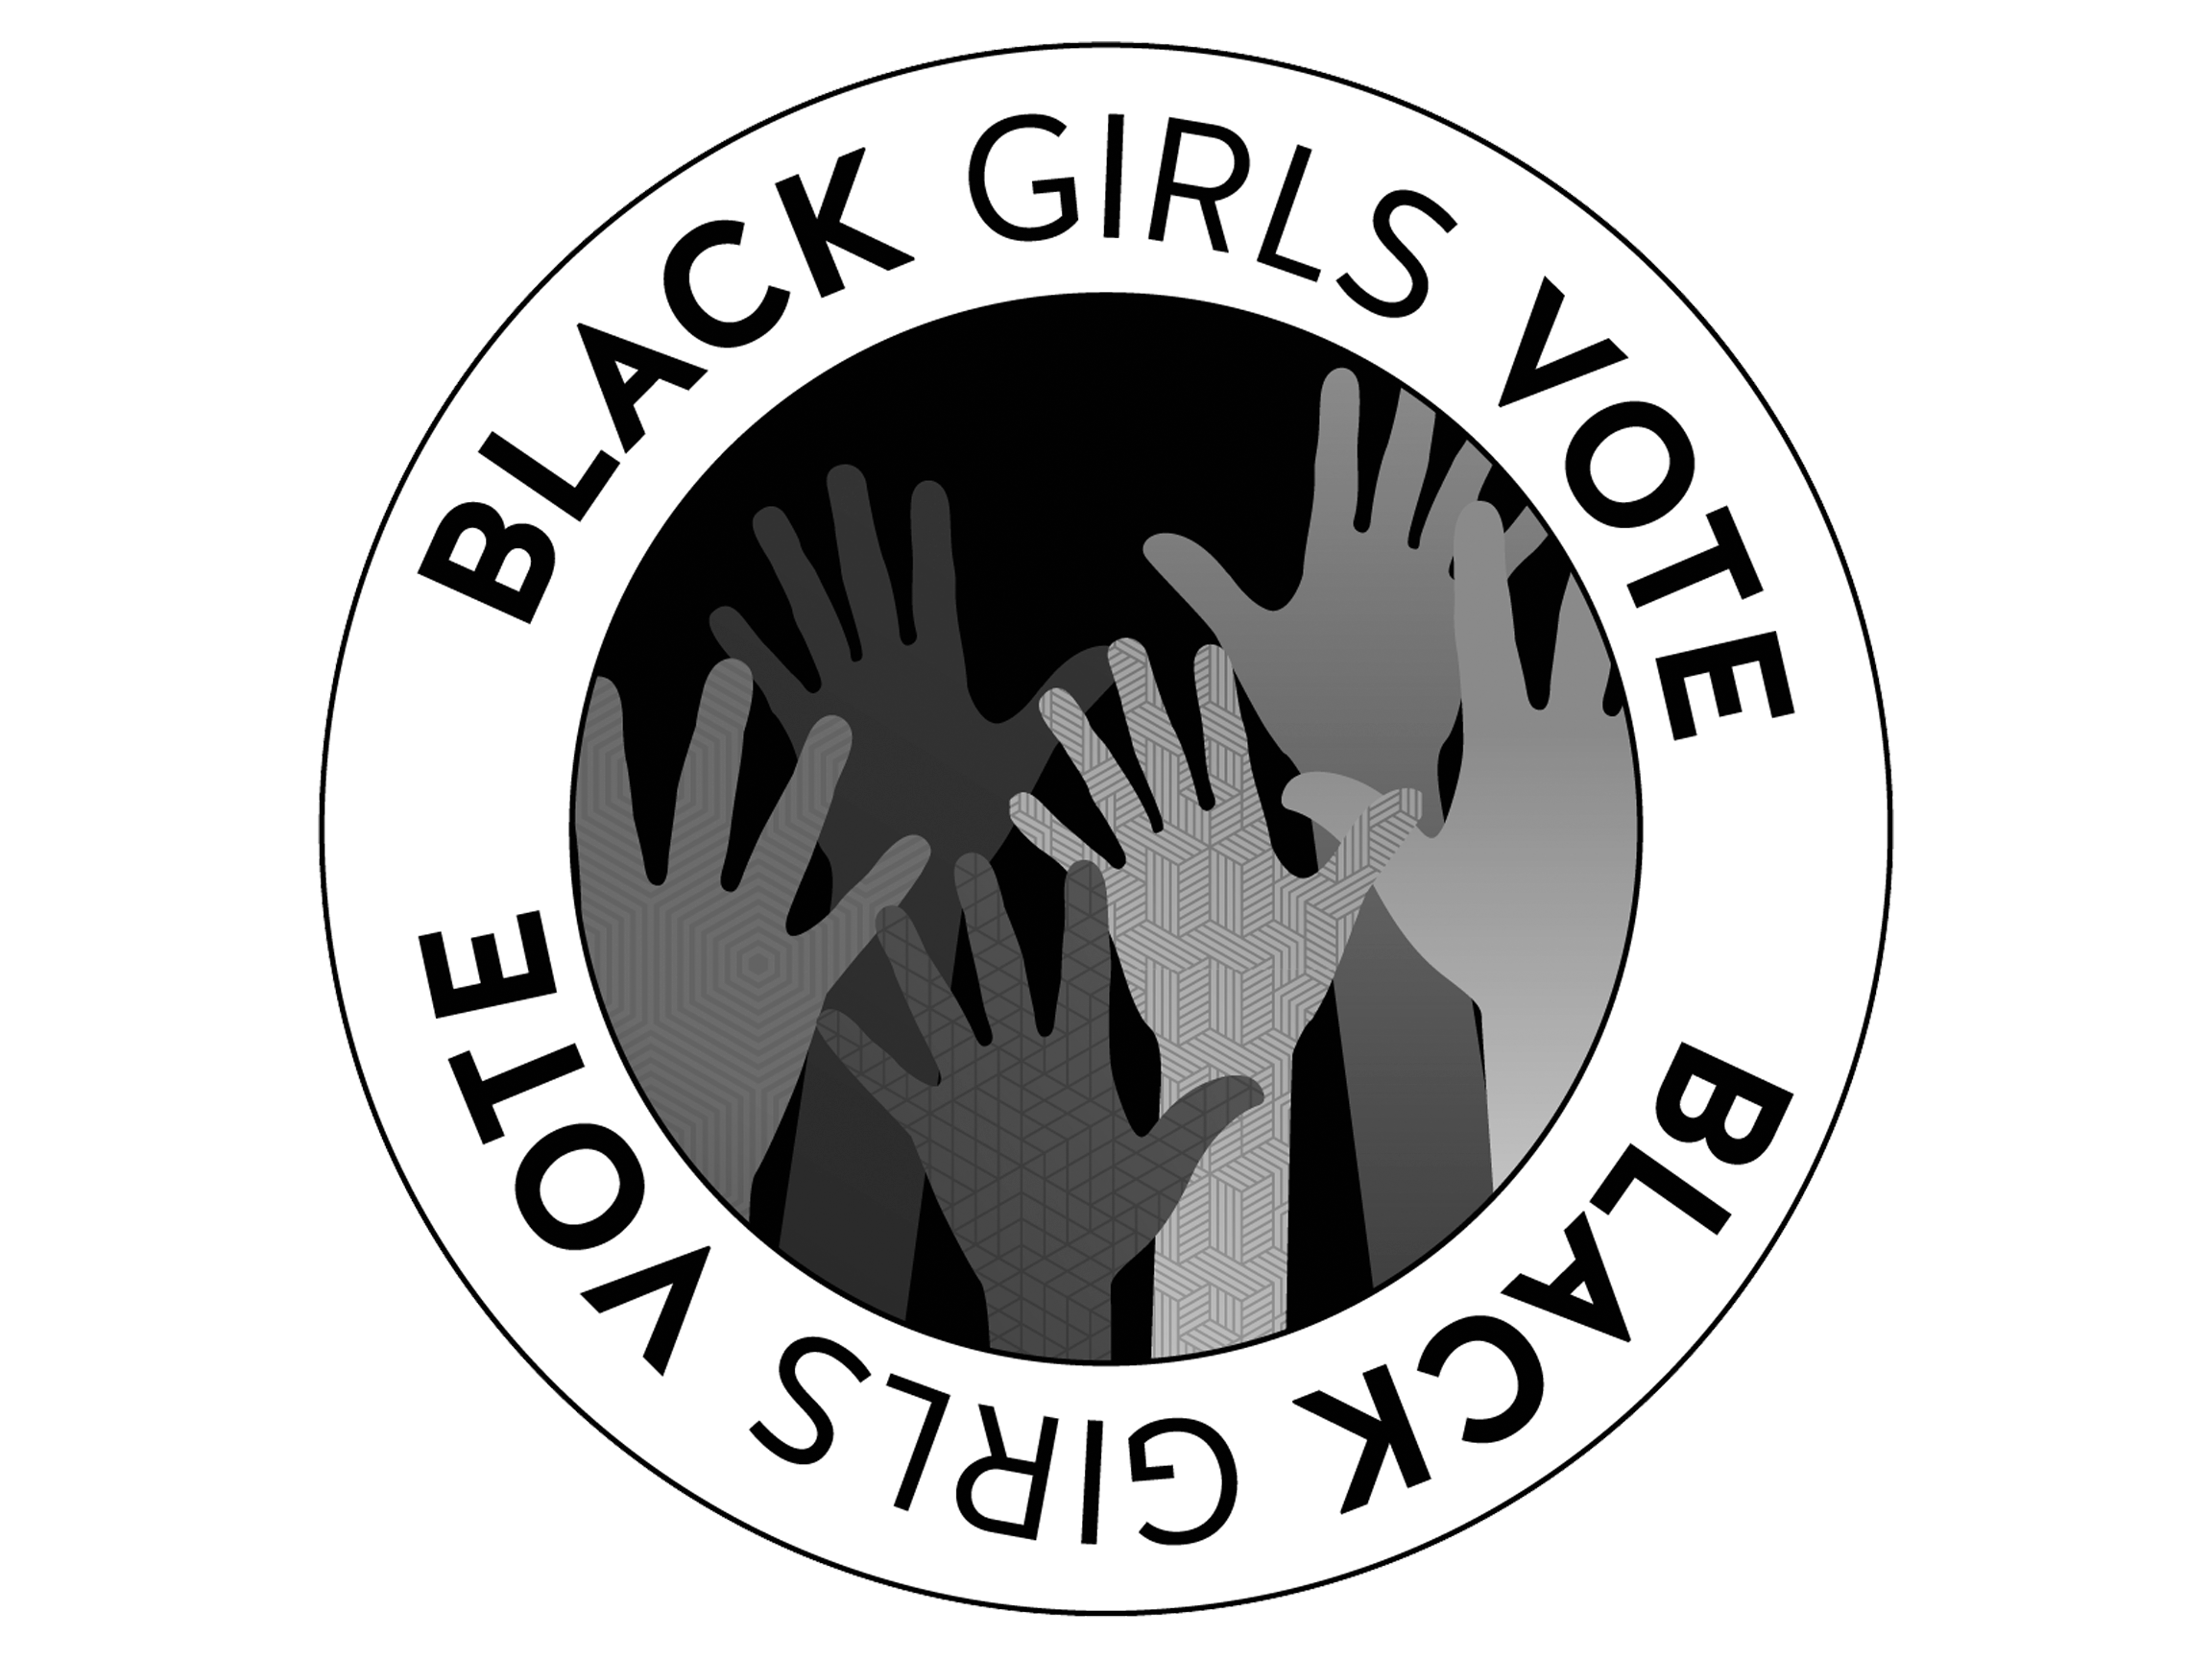 Black Girls Vote